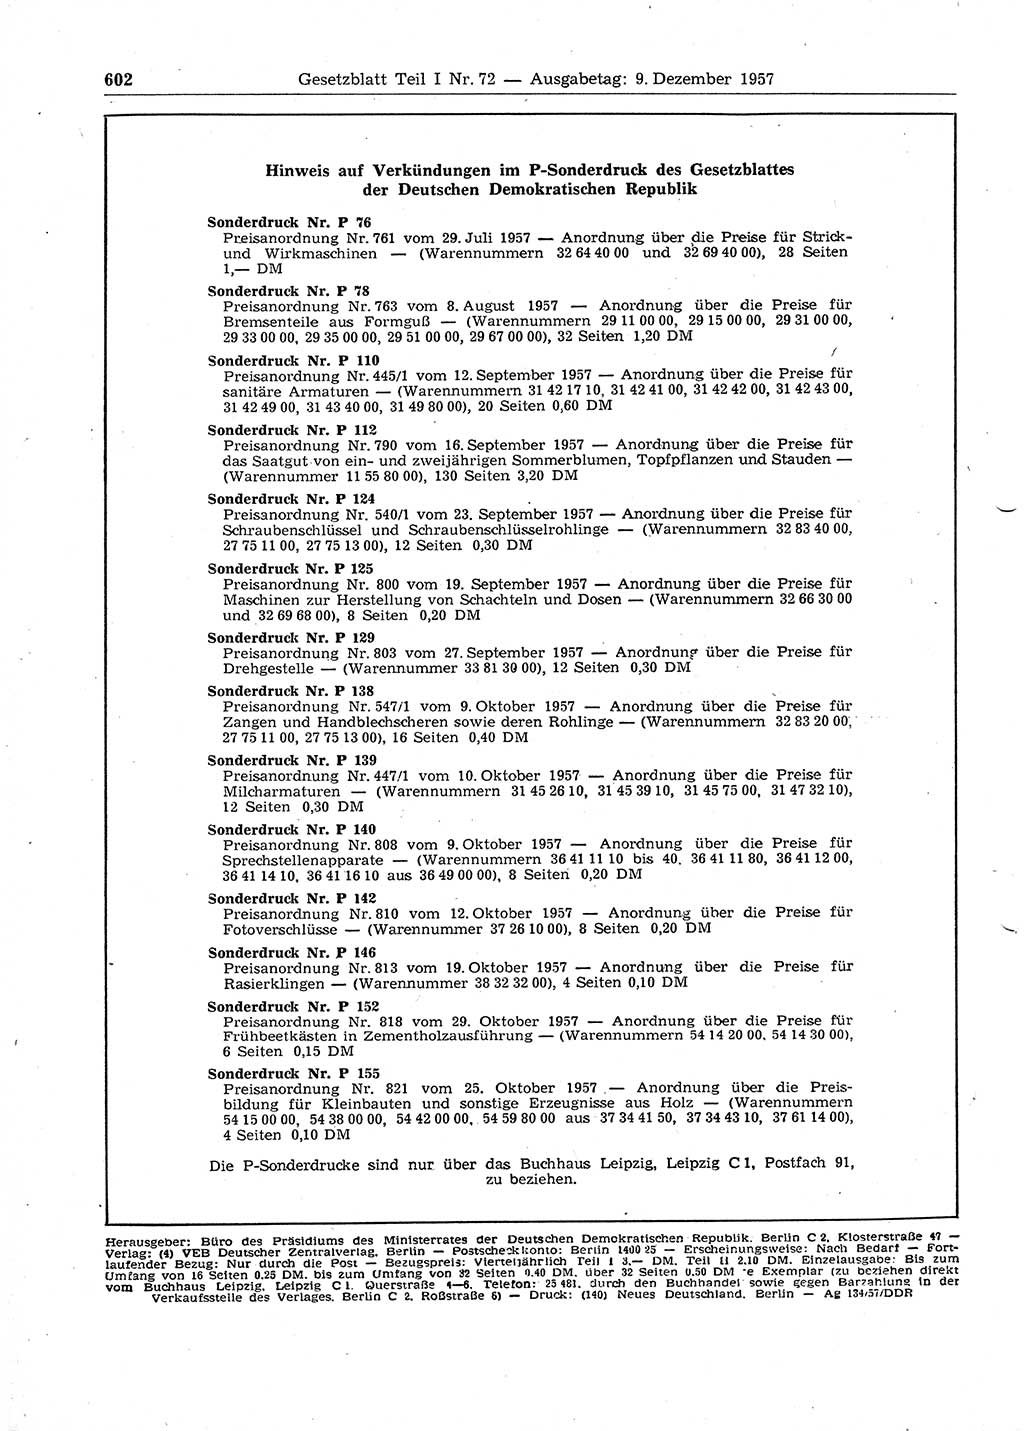 Gesetzblatt (GBl.) der Deutschen Demokratischen Republik (DDR) Teil Ⅰ 1957, Seite 602 (GBl. DDR Ⅰ 1957, S. 602)